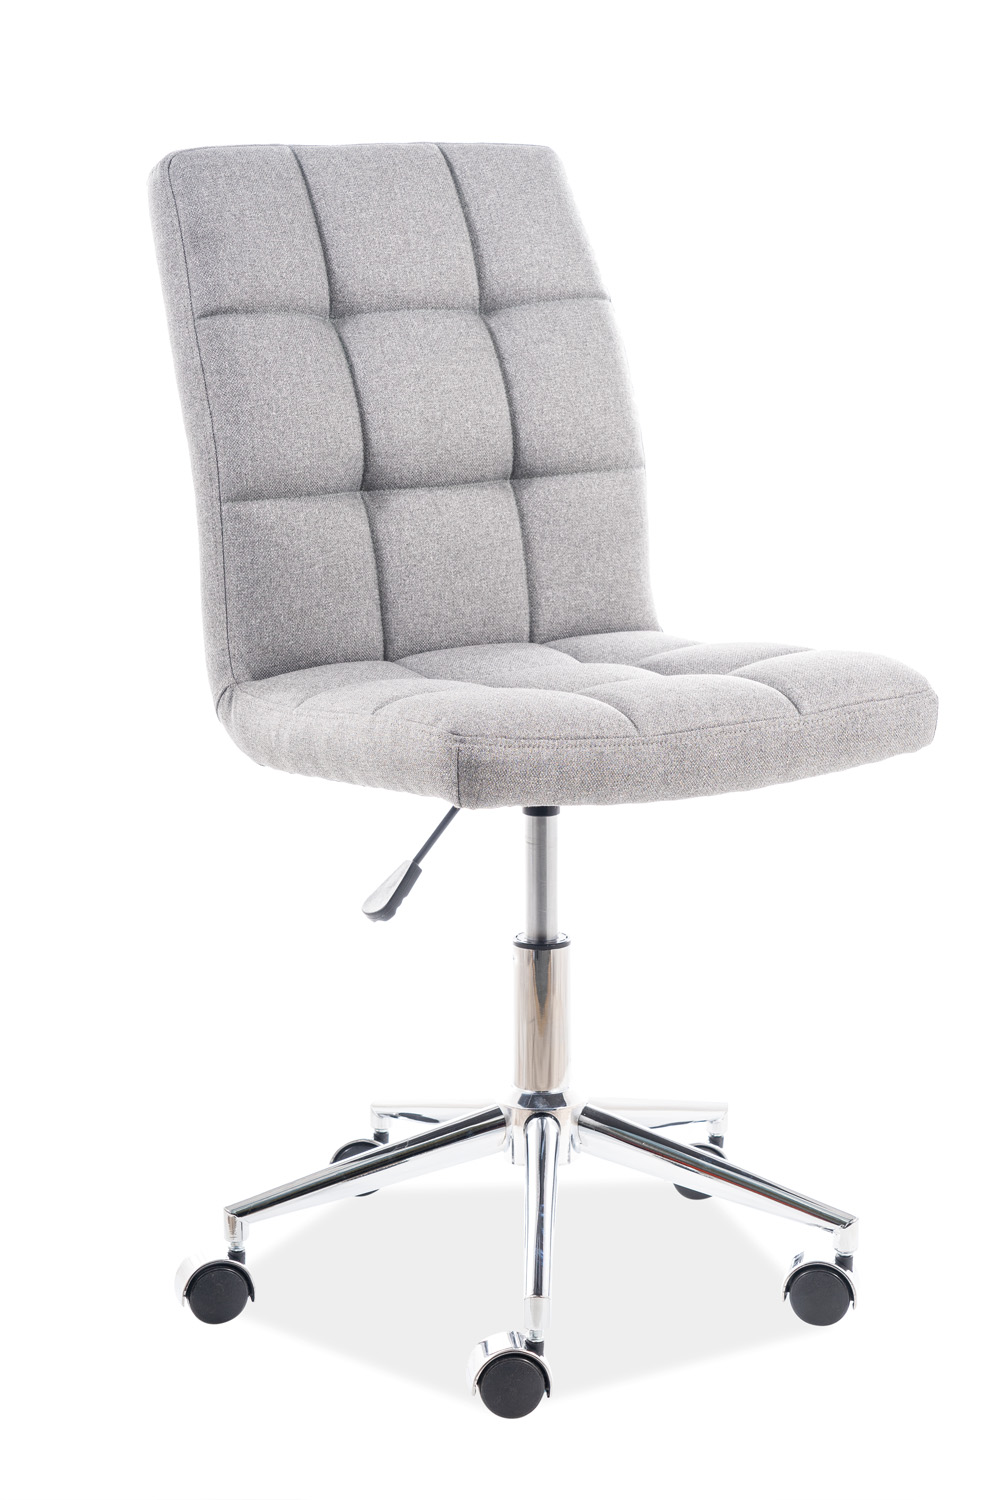 E-shop Signal Kancelárska stolička Q-020 sivý materiál